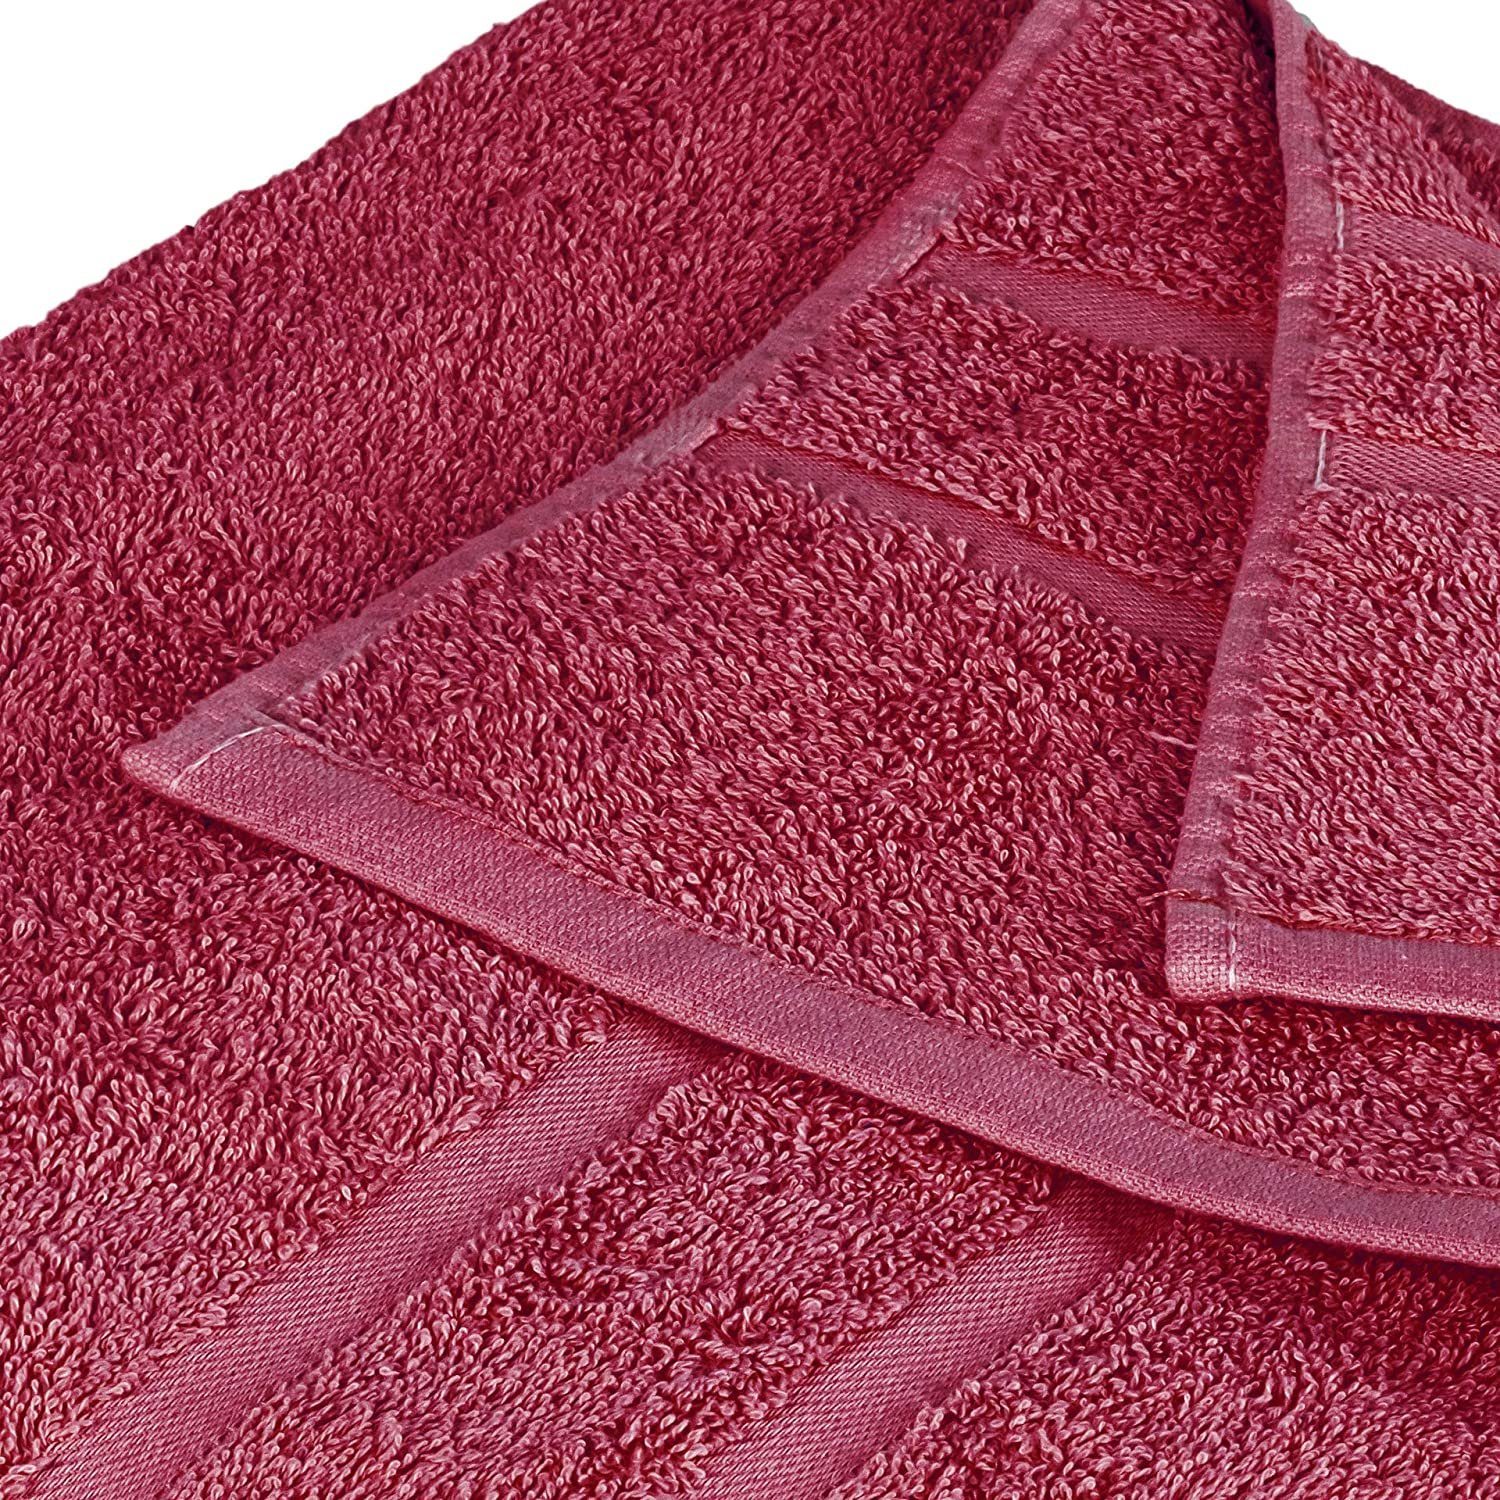 Heimtextilien Handtuch-Sets StickandShine Handtuch Set 1x Gästehandtuch 1x Handtuch 1x Duschtuch als SET in verschiedenen Farben